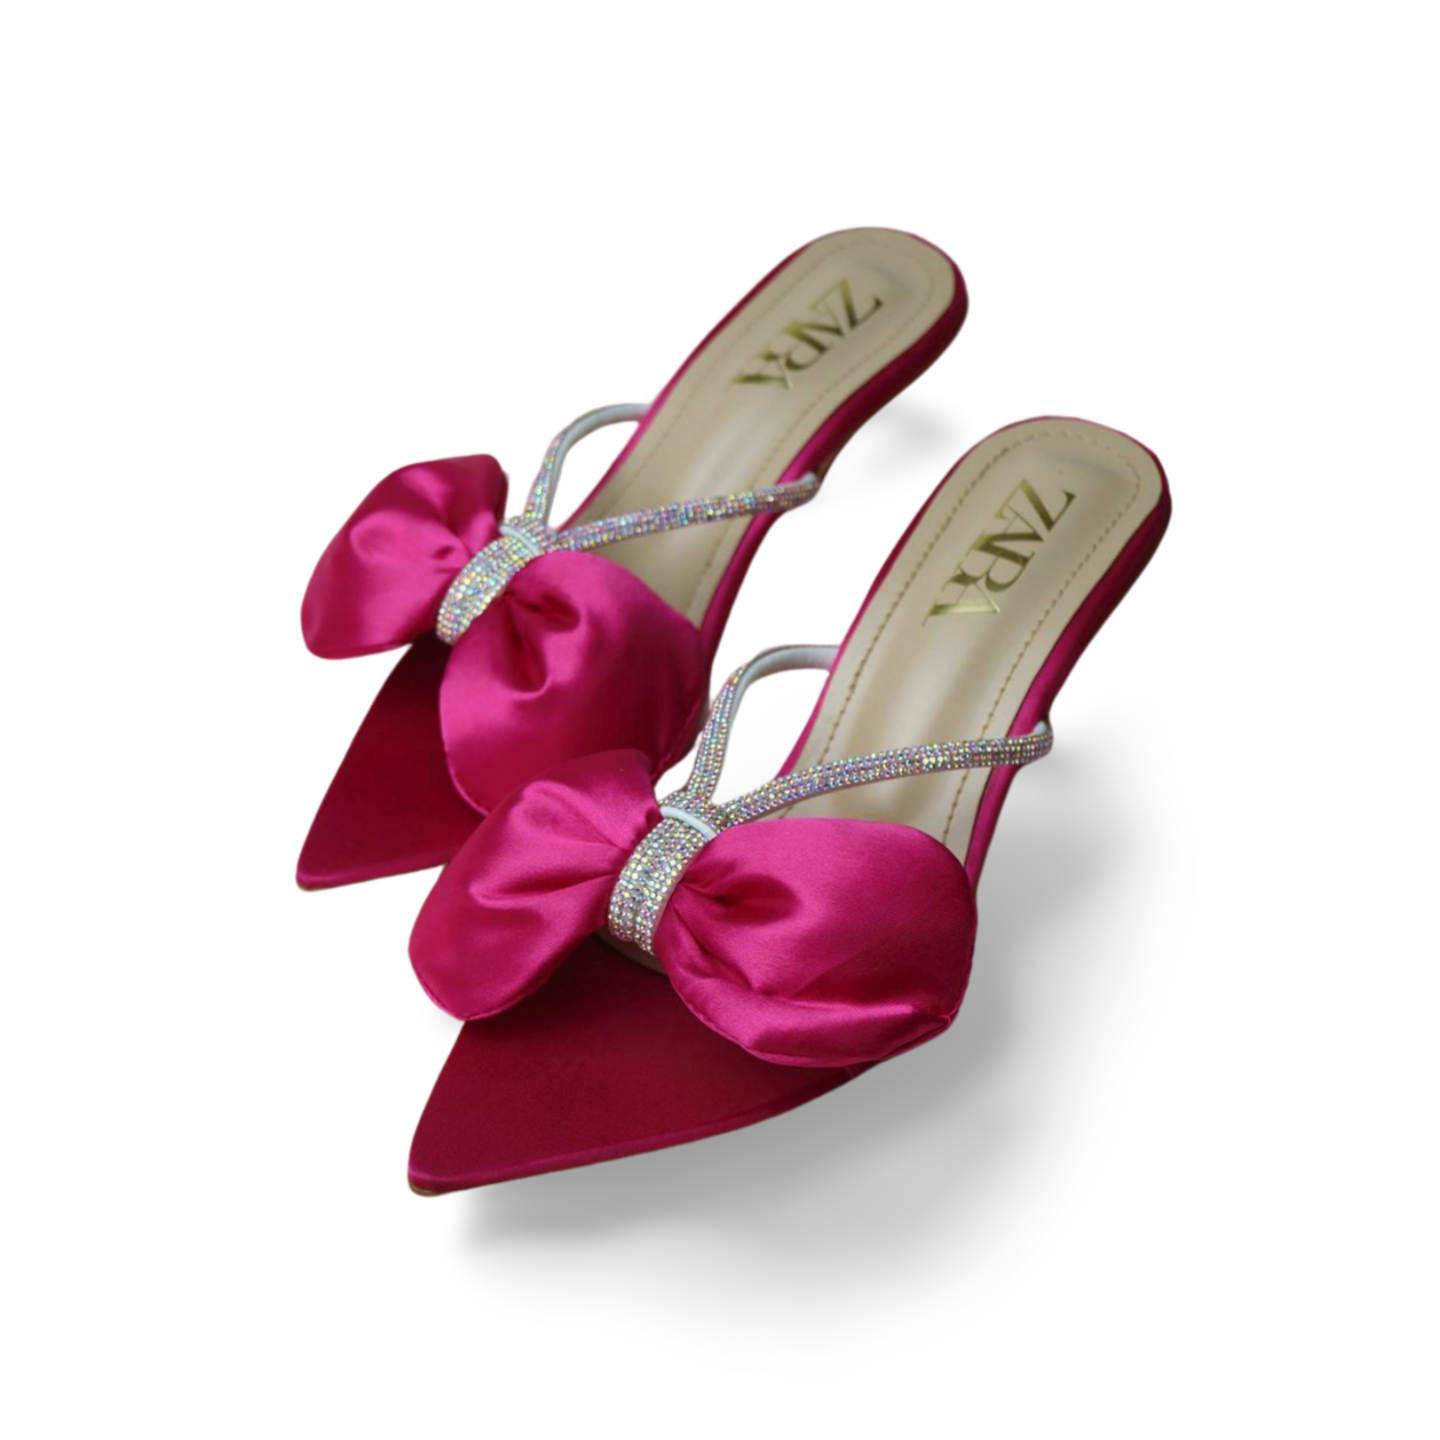 Velvet Bow Tie Court Shoes for Women